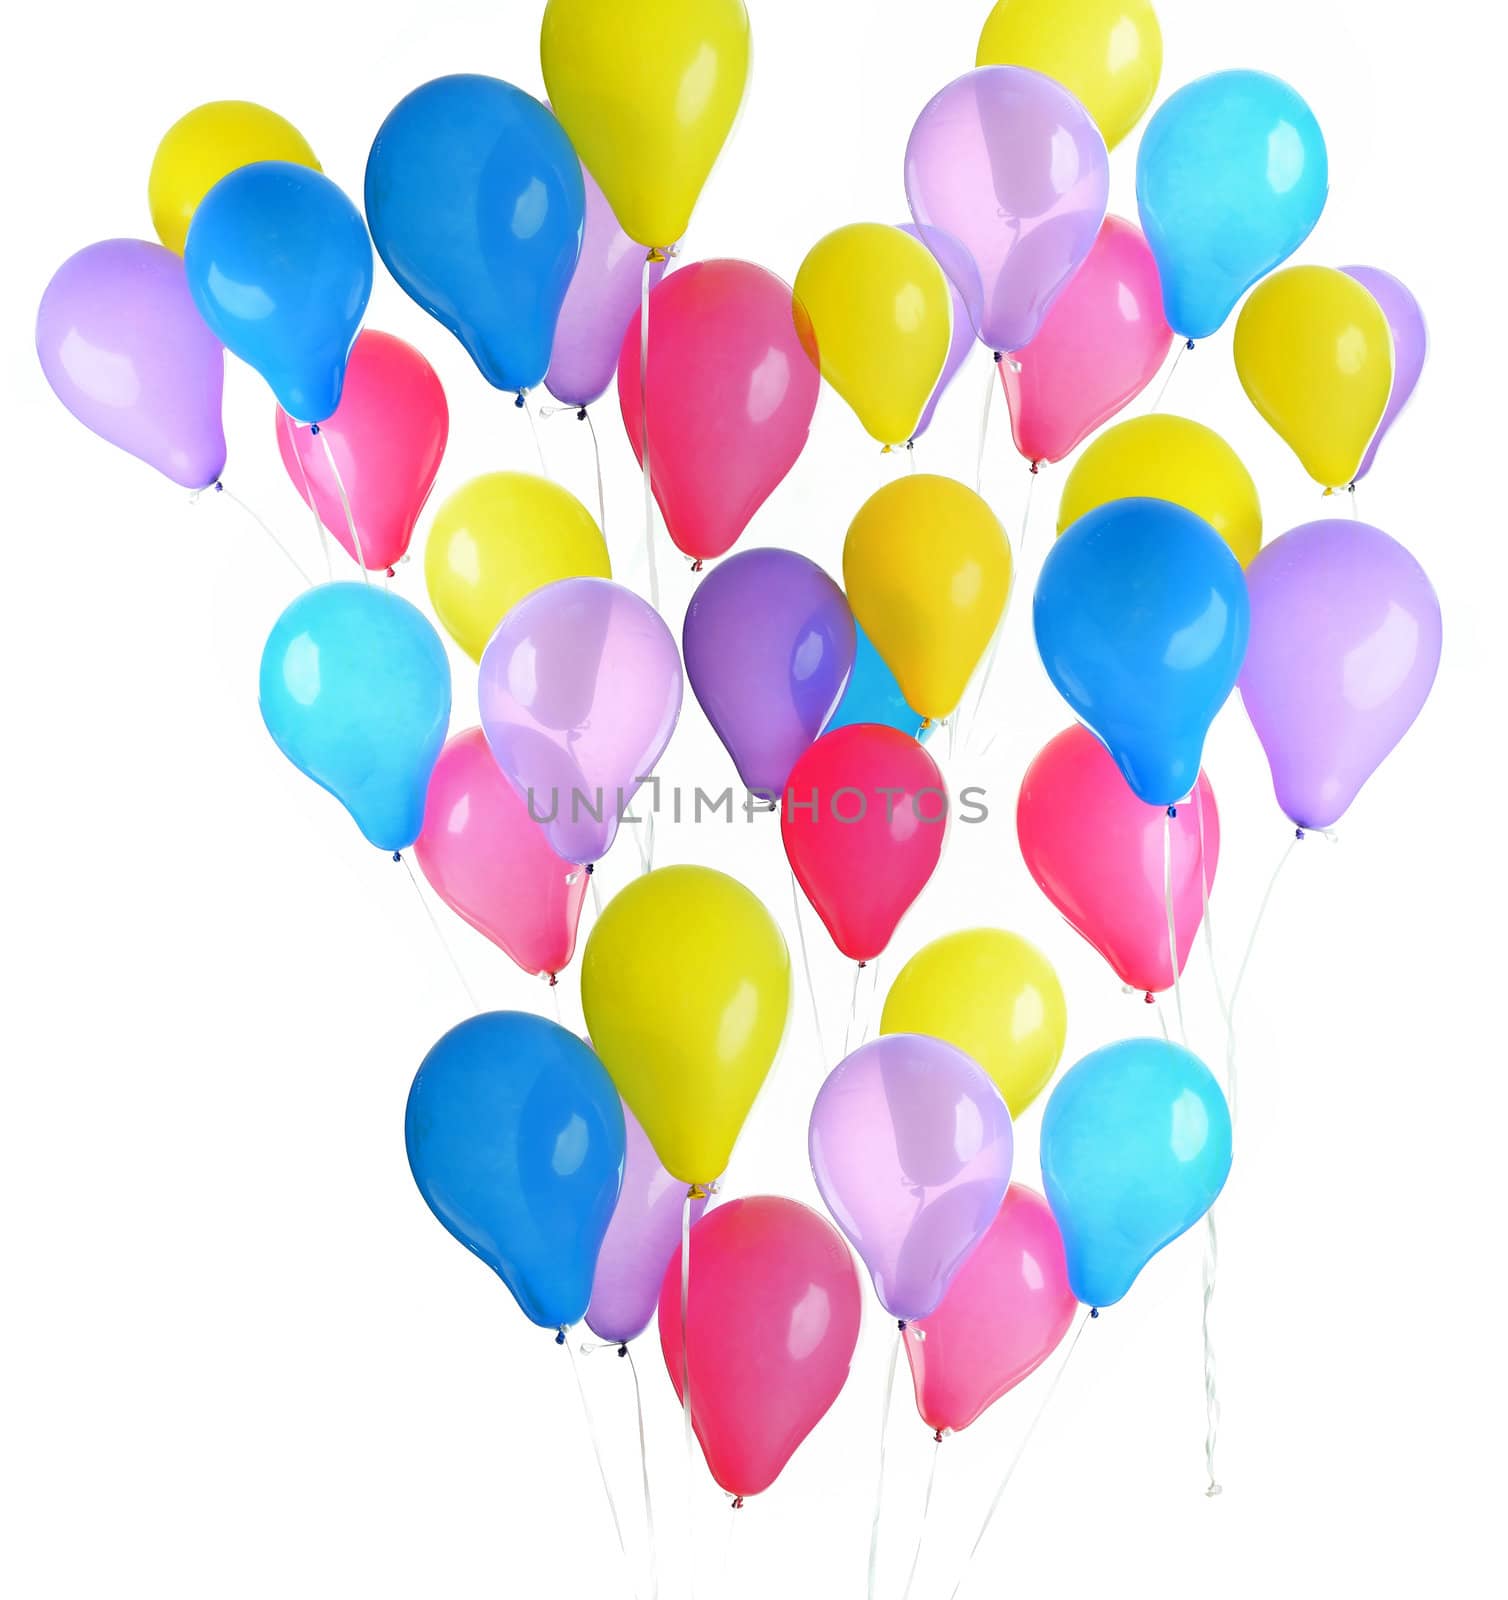 Balloons by velkol